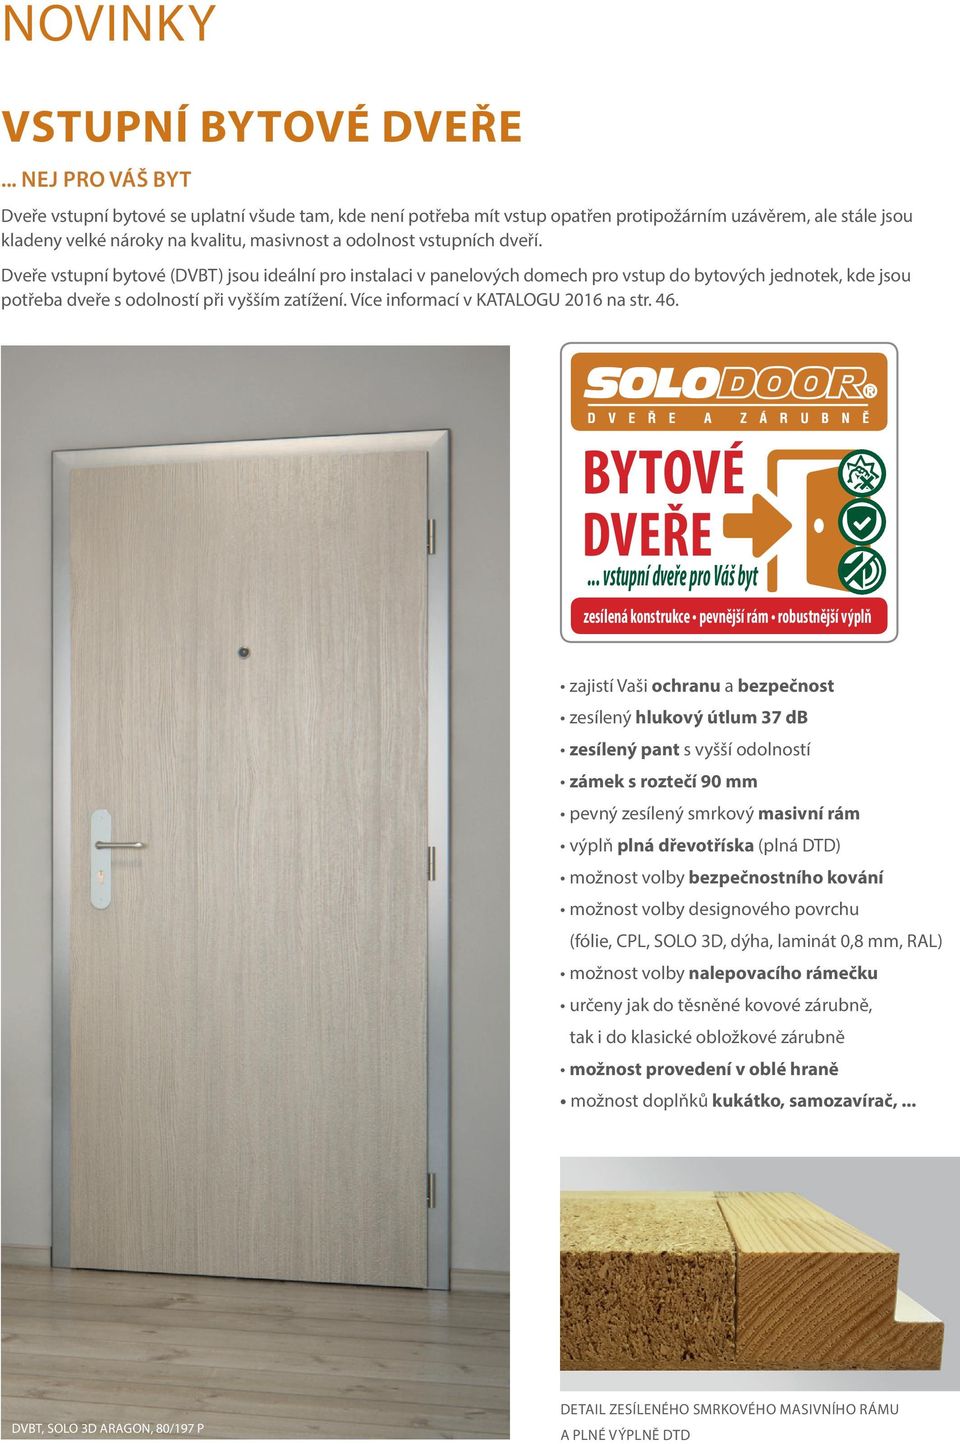 dveří. Dveře vstupní bytové (DVBT) jsou ideální pro instalaci v panelových domech pro vstup do bytových jednotek, kde jsou potřeba dveře s odolností při vyšším zatížení.